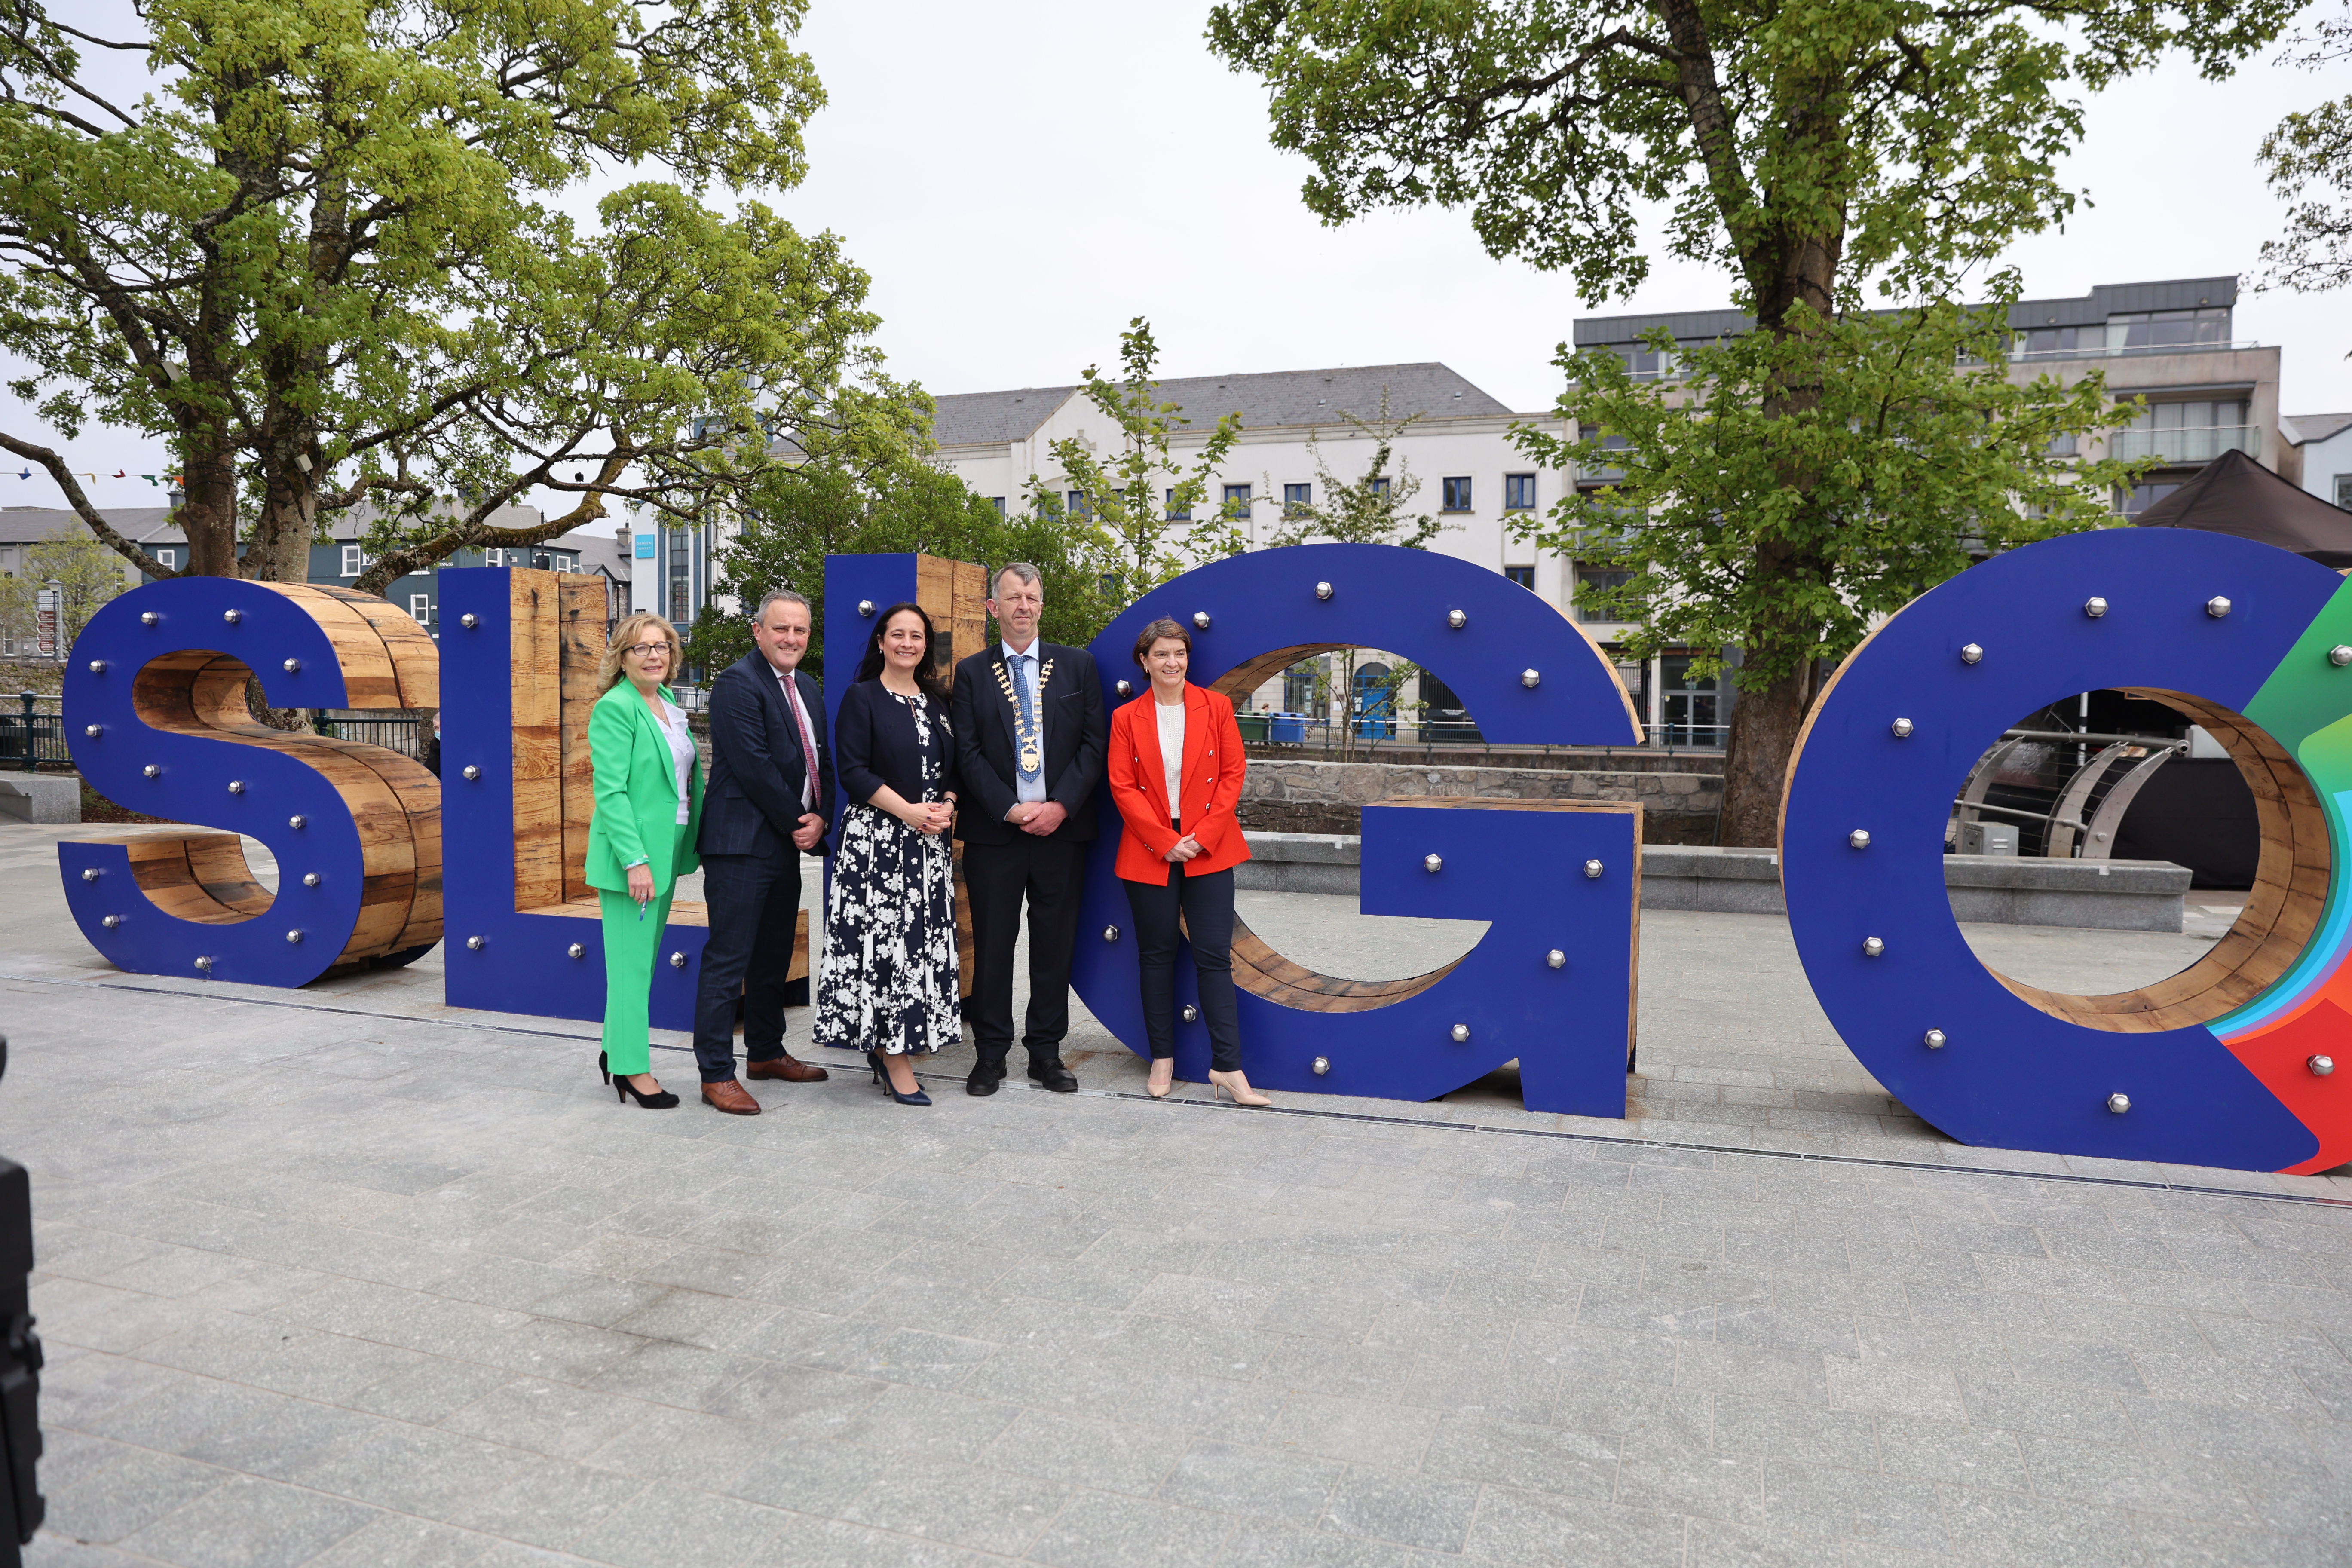 New Queen Maeve Square opens in Co. Sligo 